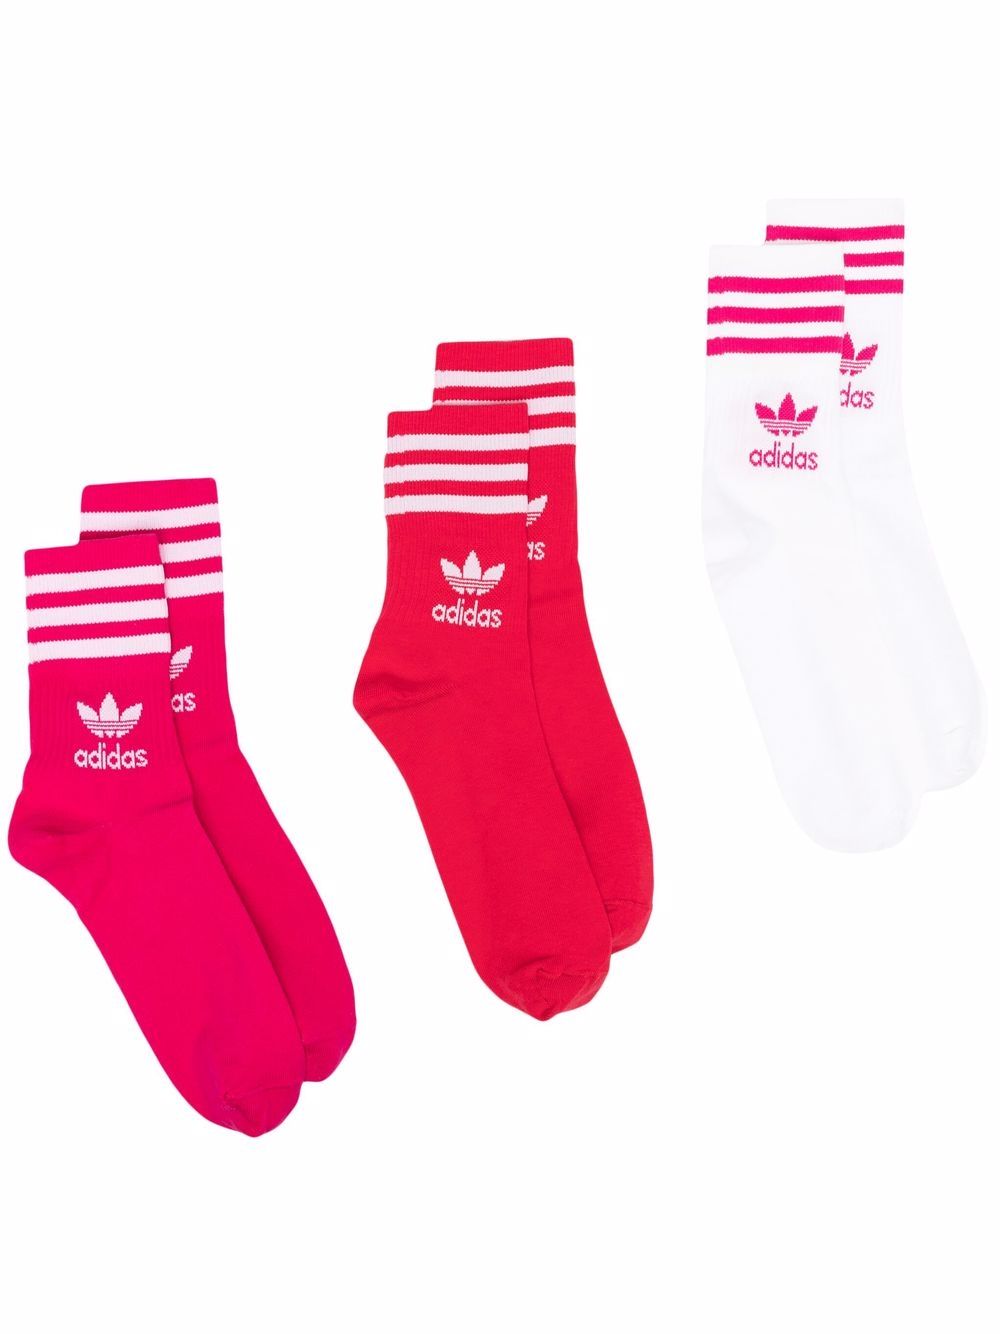 фото Adidas комплект originals из трех пар носков